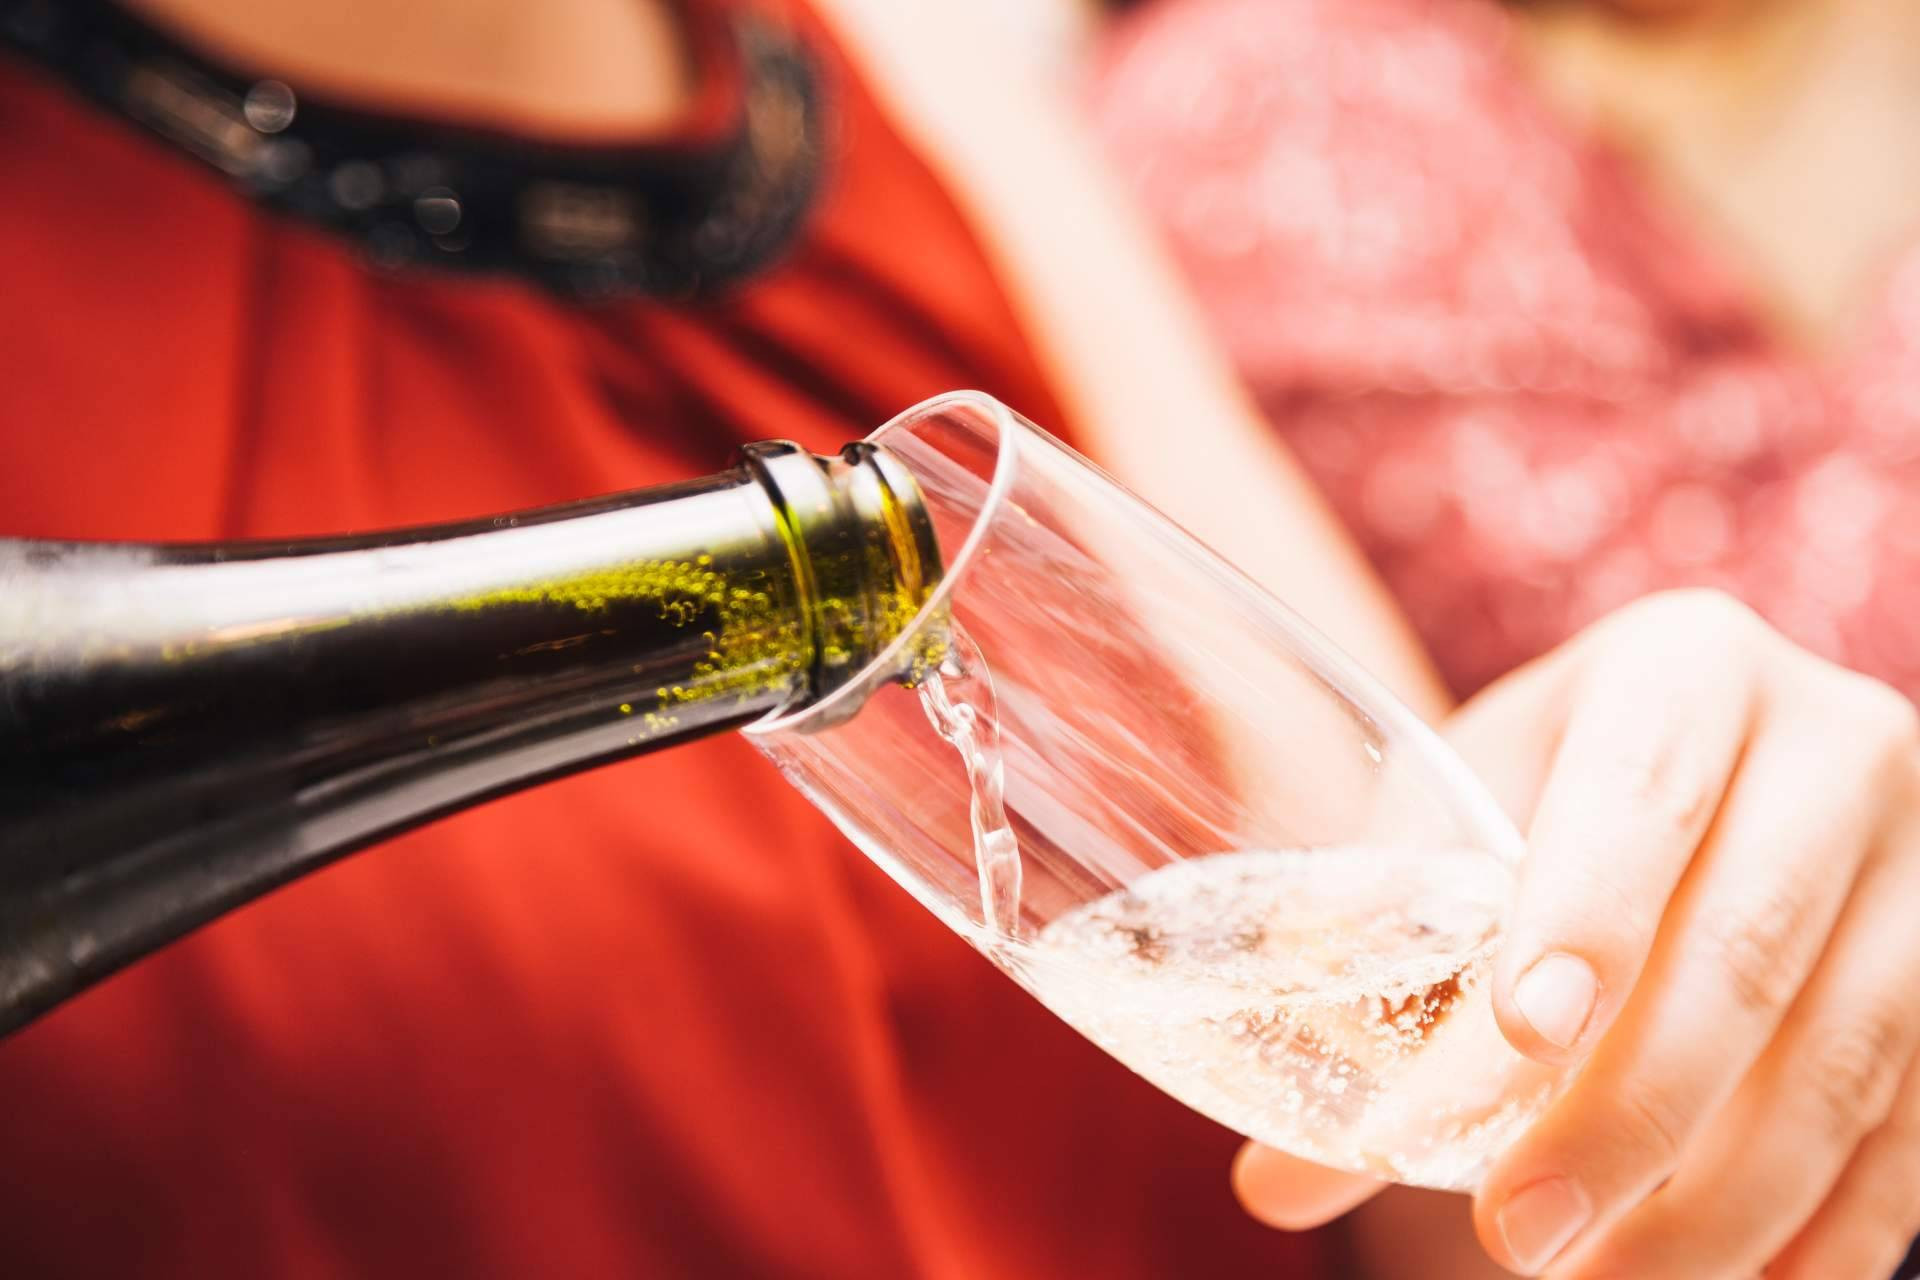  ¿Qué diferencias hay entre el champagne francés y el cava?, por La Tintorería Vinoteca 